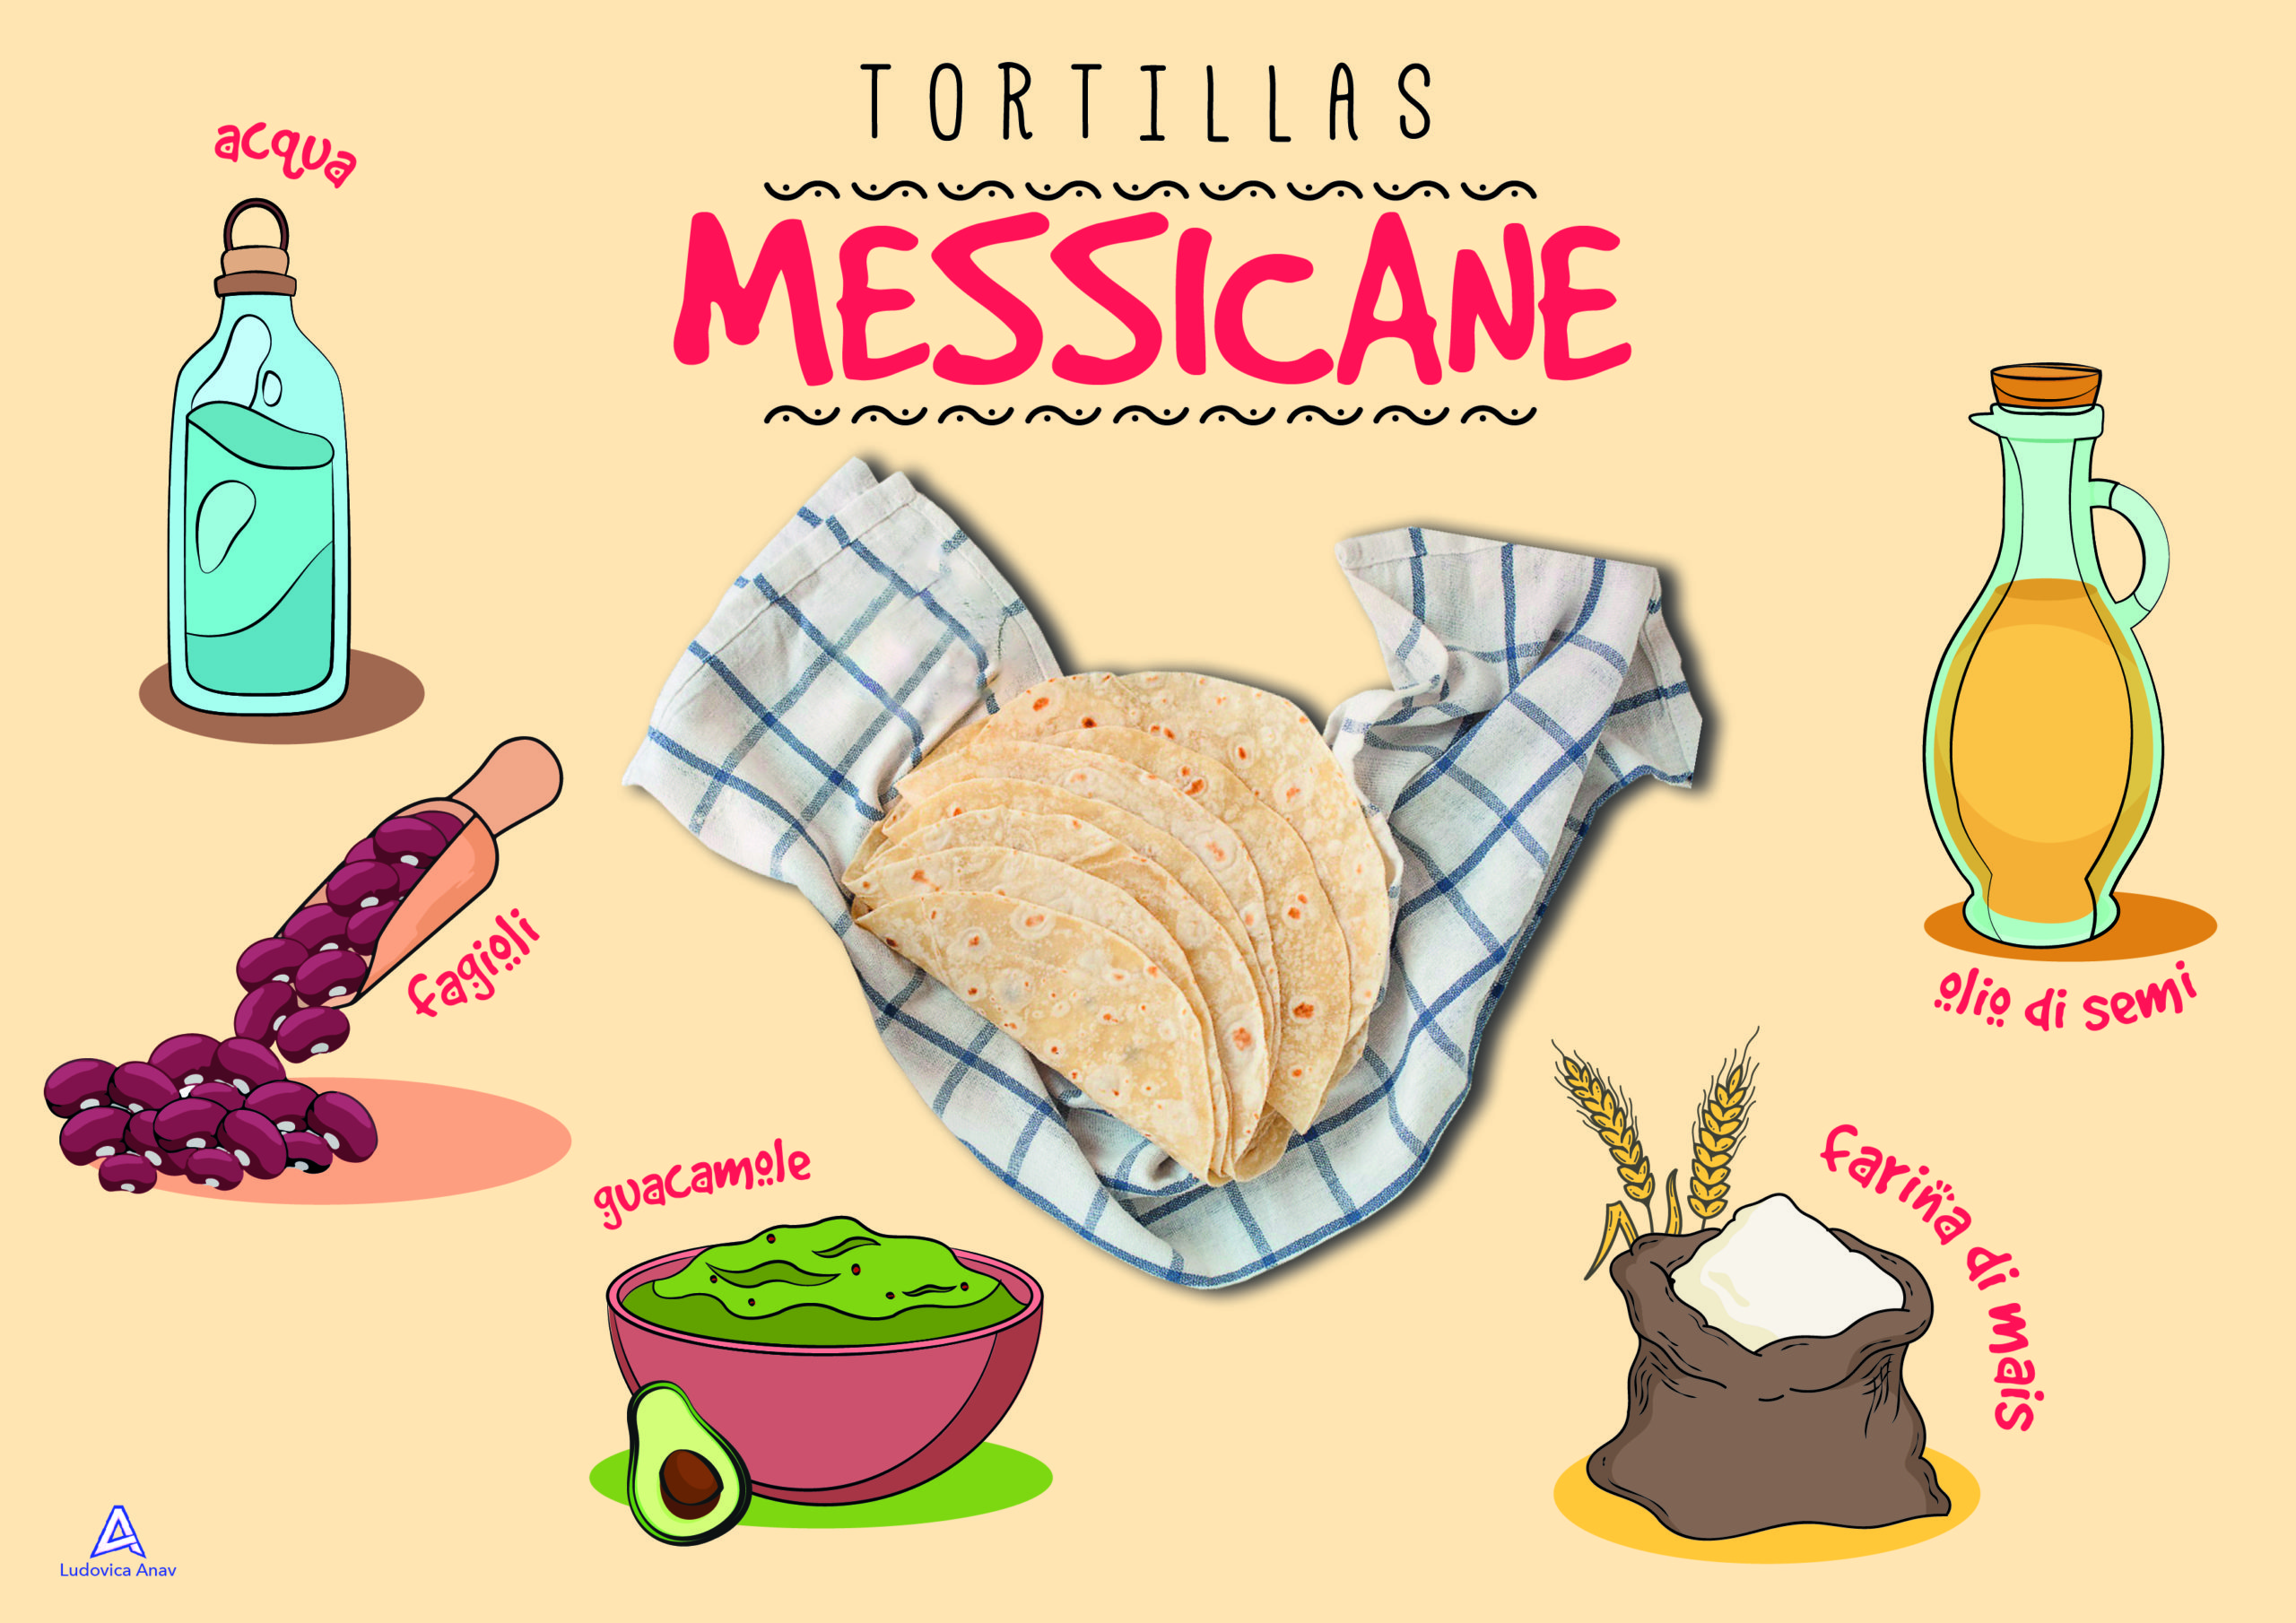 Tortillas messicane